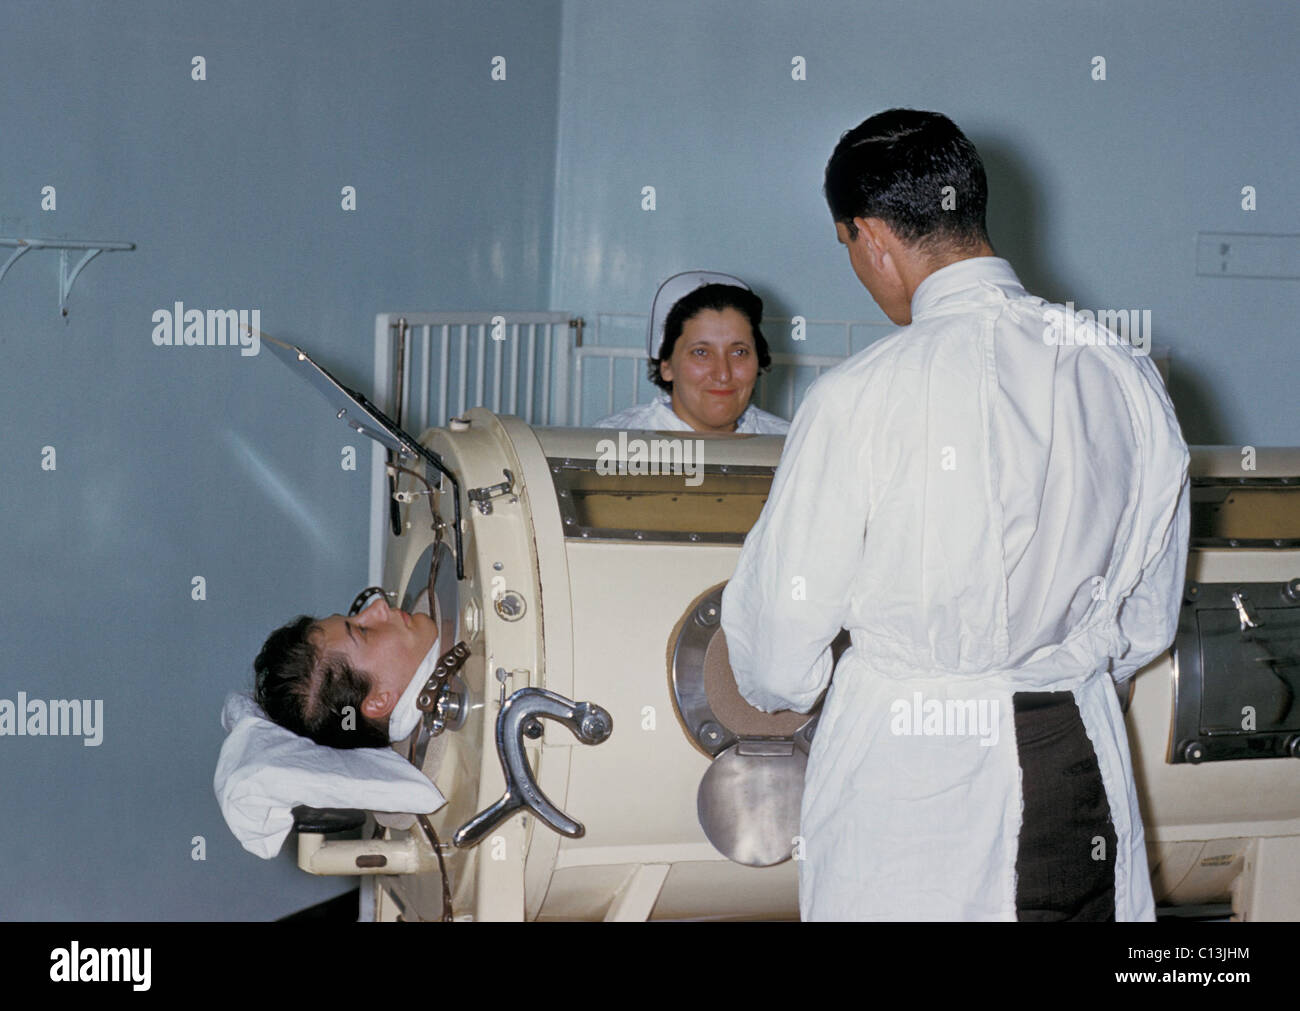 Krankenhauspersonal untersuchen ein Patienten im Respirator Tank, eiserne Lunge, während einer Polio-Epidemie in Rhode Island. Die eiserne Lunge umhüllt die Brusthöhle extern in einer luftdichten Kammer. Die Kammer wurde verwendet, um einen Unterdruck in der Brusthöhle, wodurch Luft in die Lungen zu Hämoglobin Druckausgleich hetzen zu erstellen. Ca. 1960. Stockfoto